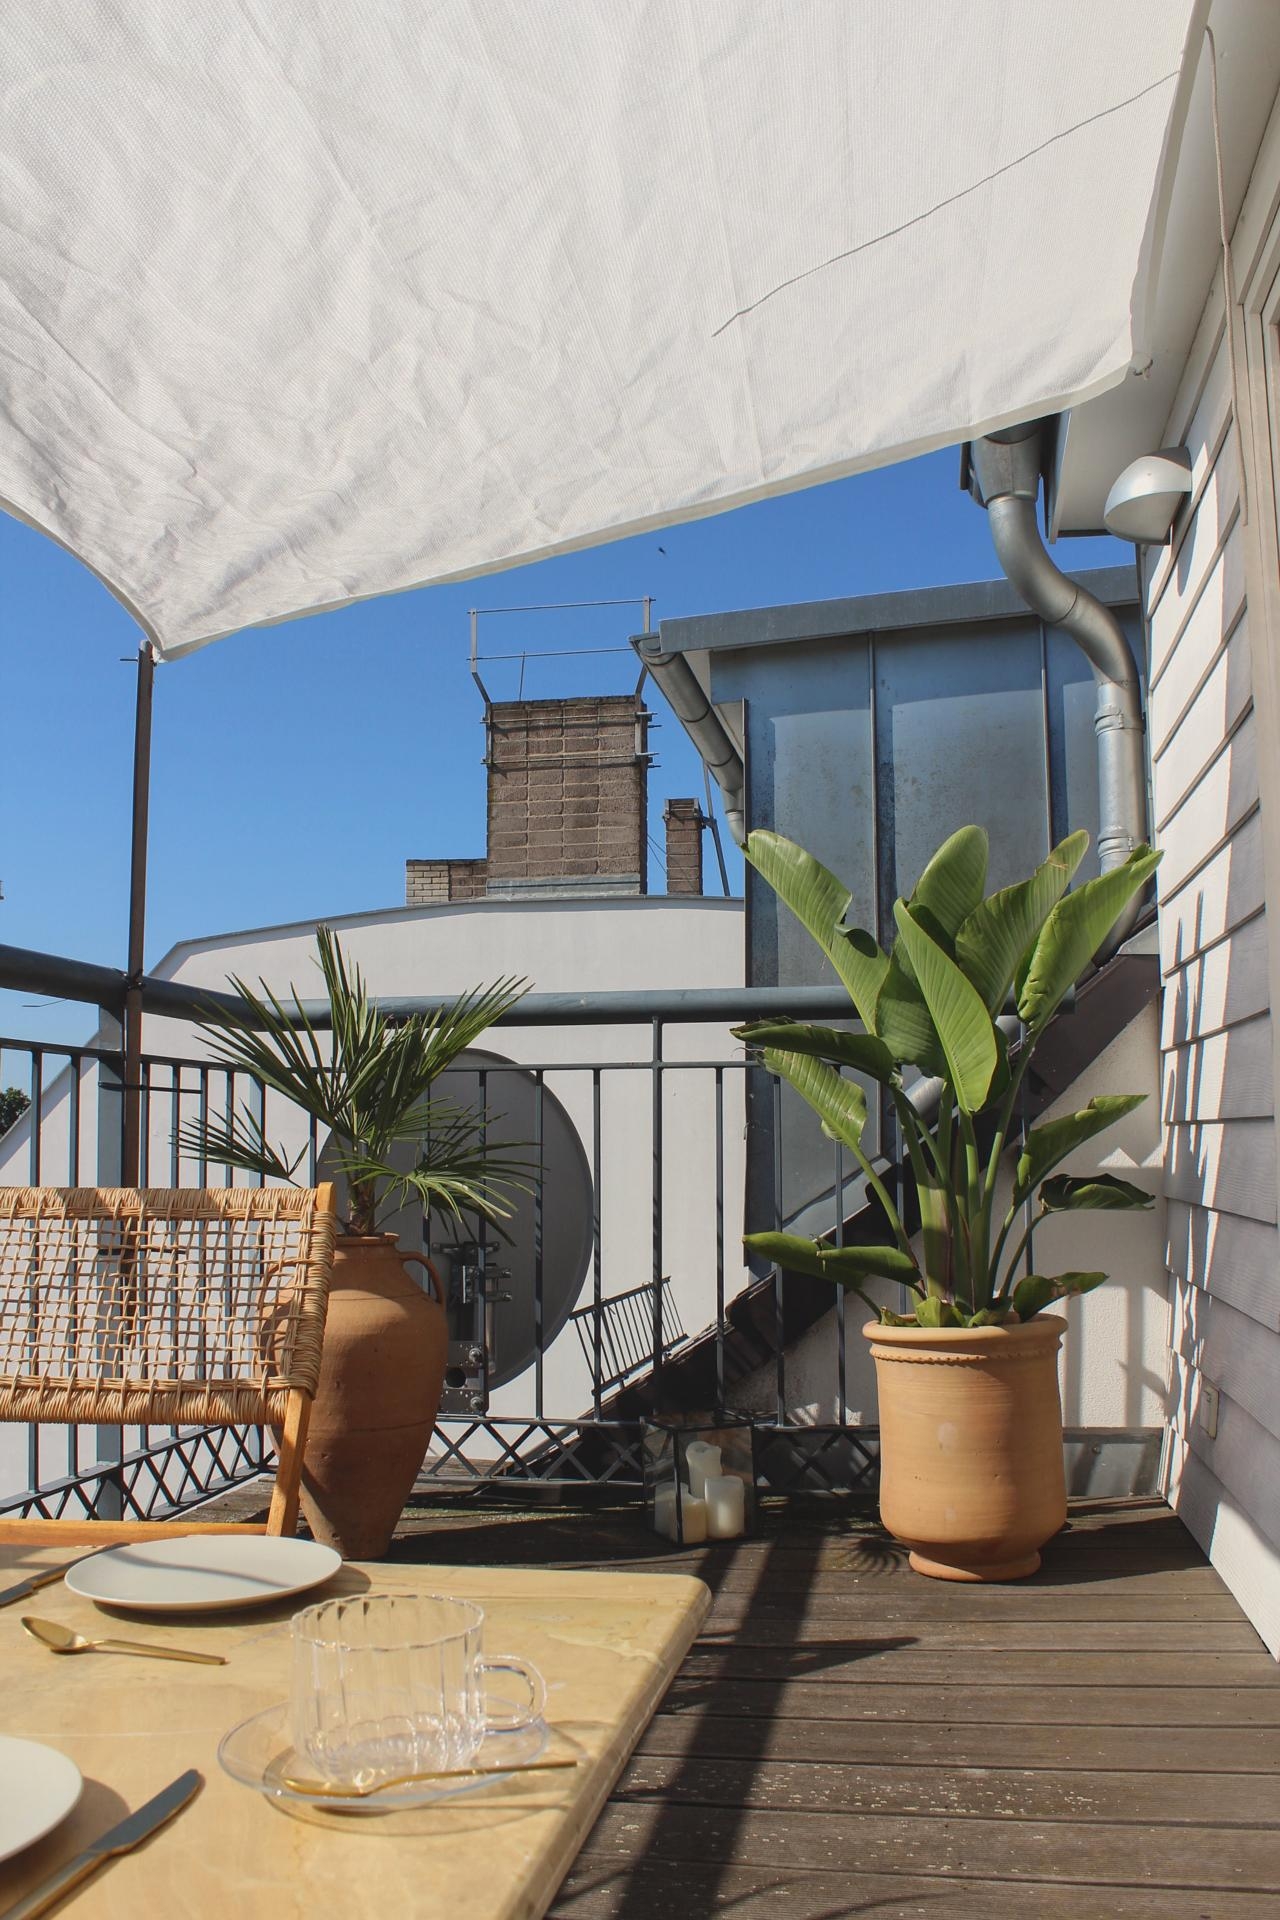 Ein wenig Urlaub zuhause gibt es mit einem gemütlichen Brunch auf dem Balkon mit den liebsten 🌞 #outdoorweek #balkonien